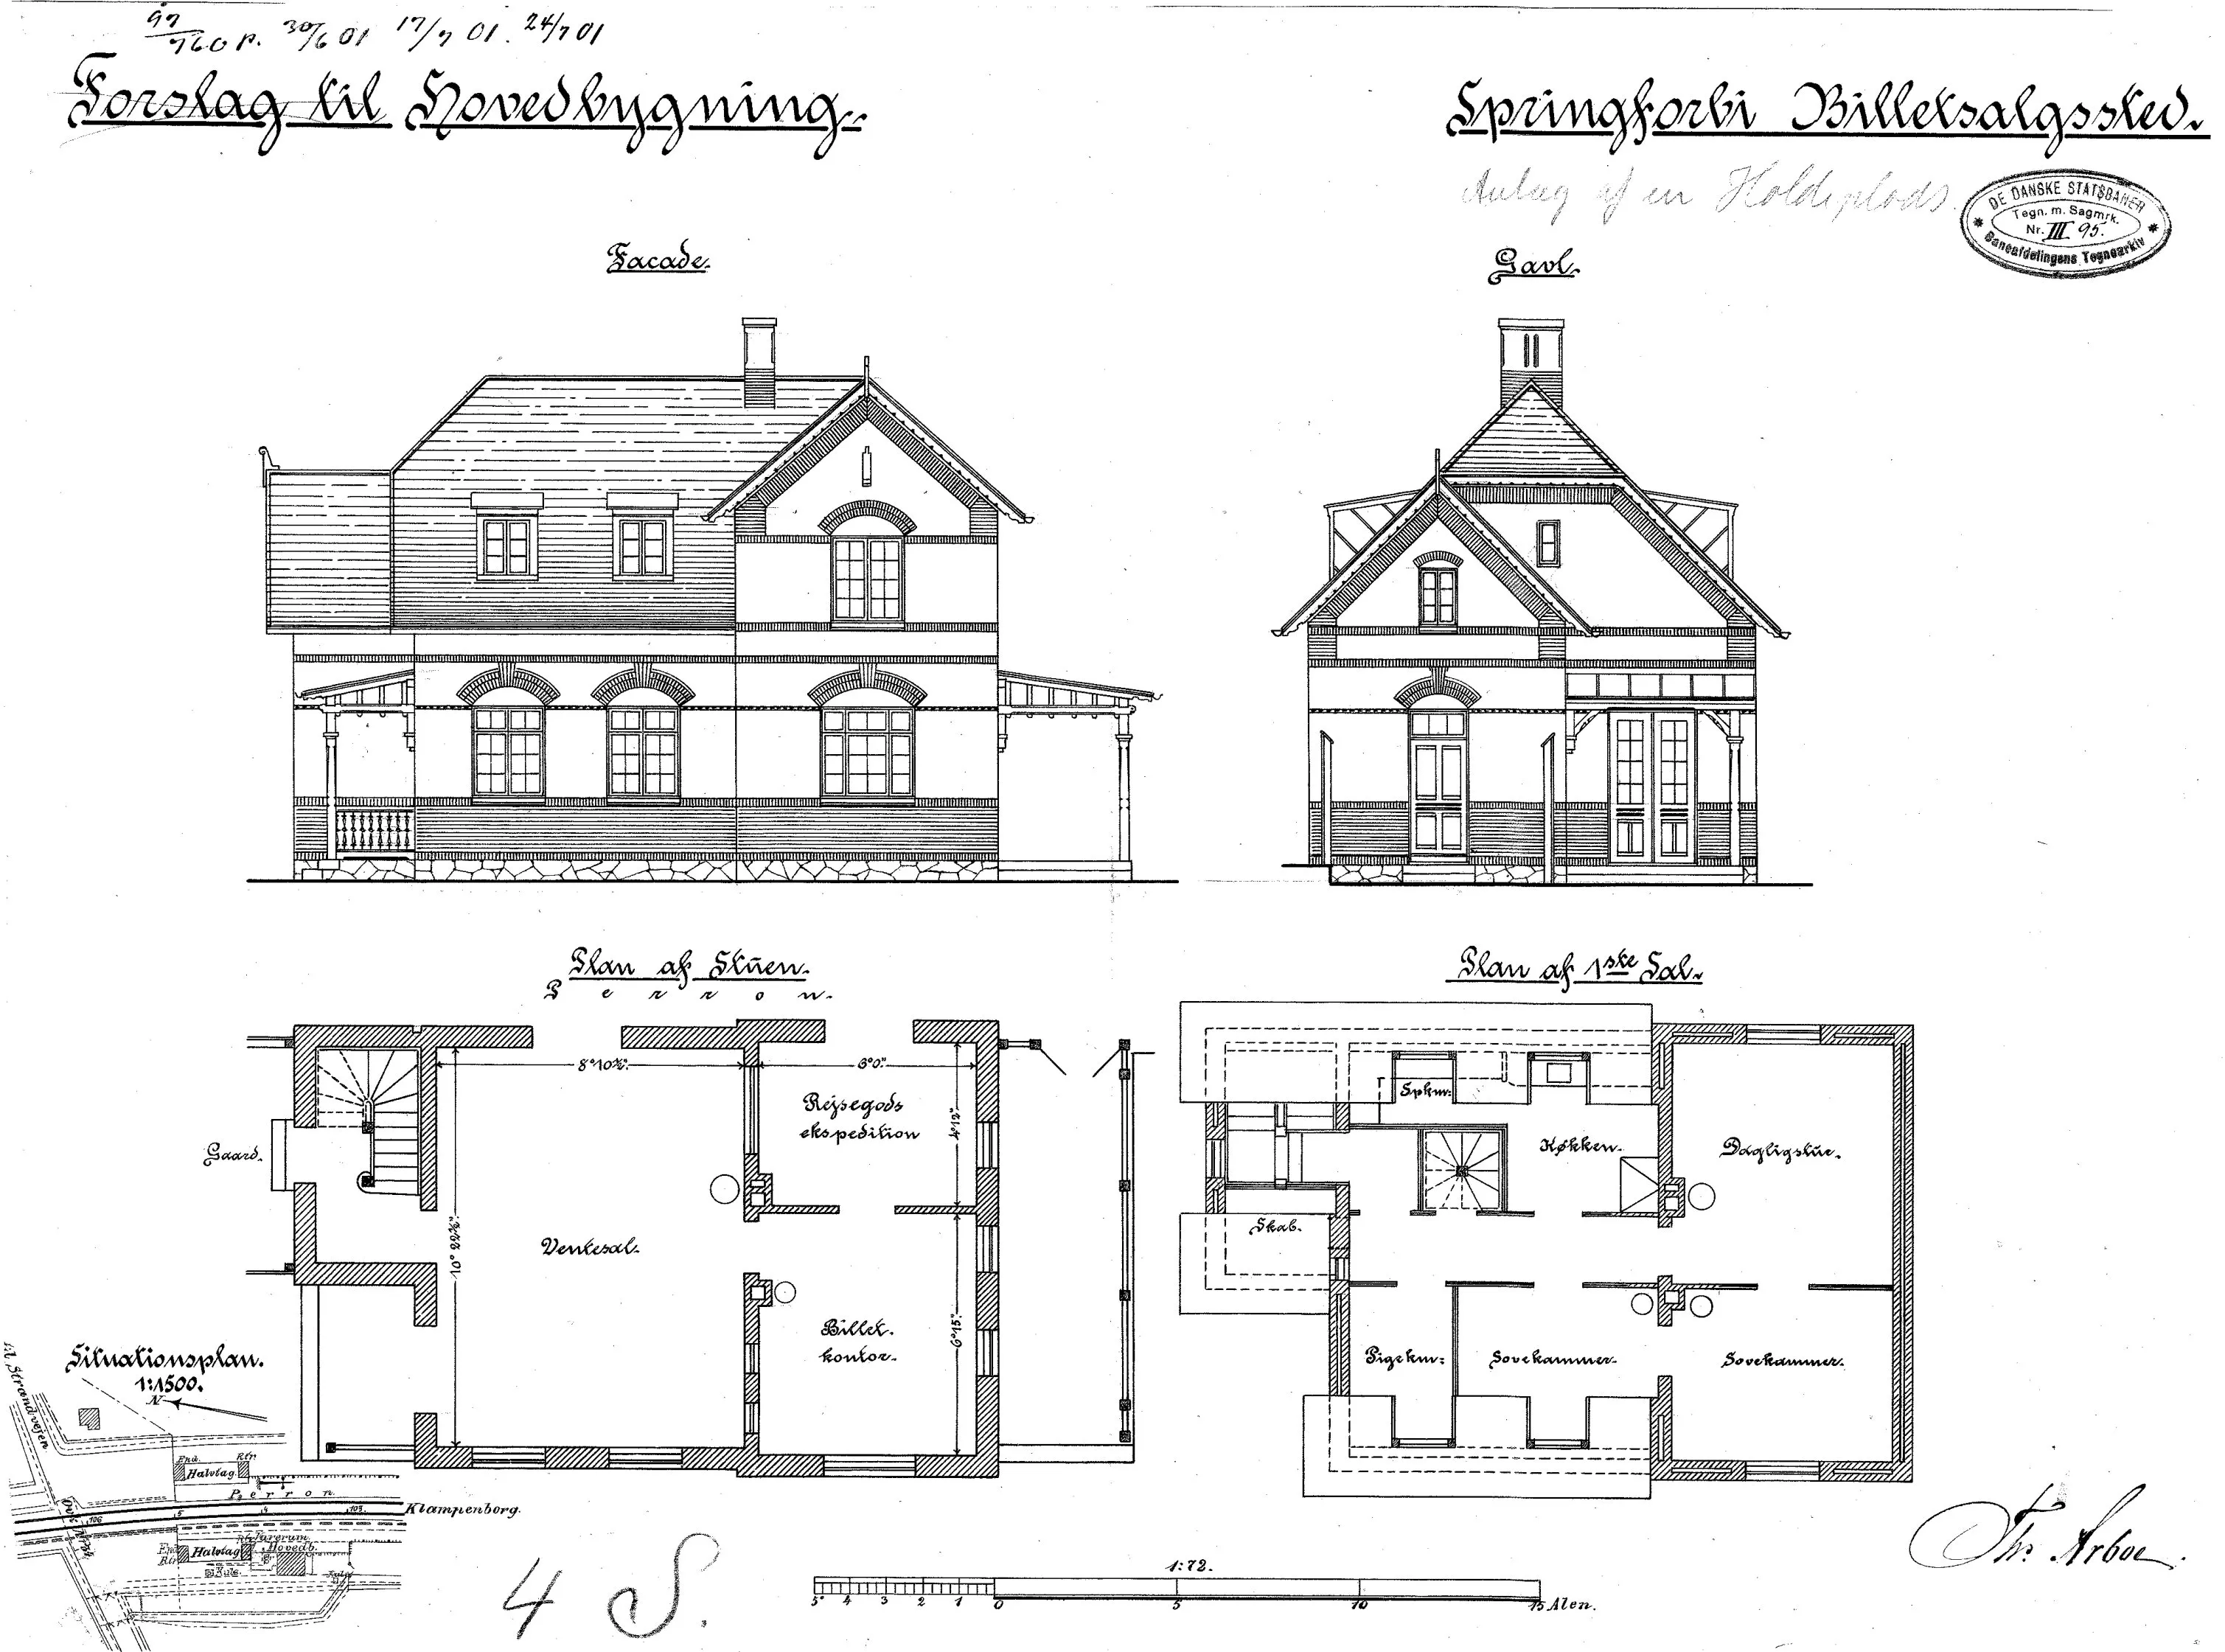 Tegning af Springforbi Billetsalgssted - Forslag til hovedbygning.